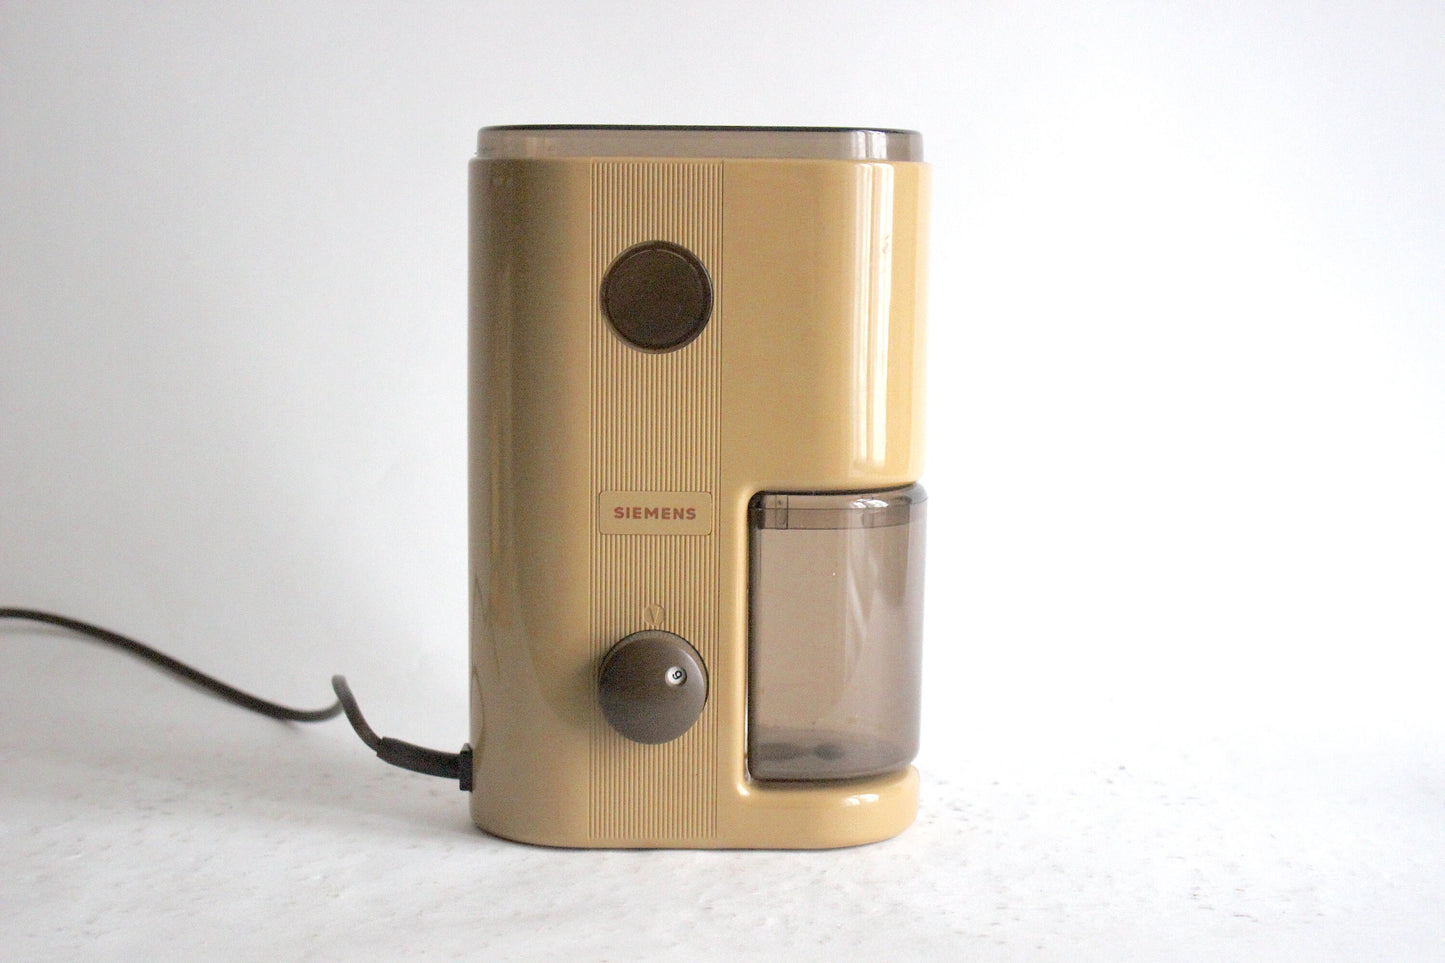 Vintage Siemens MC 2705 Electric Coffee Grinder - 1970s German Engineering with Original Packaging